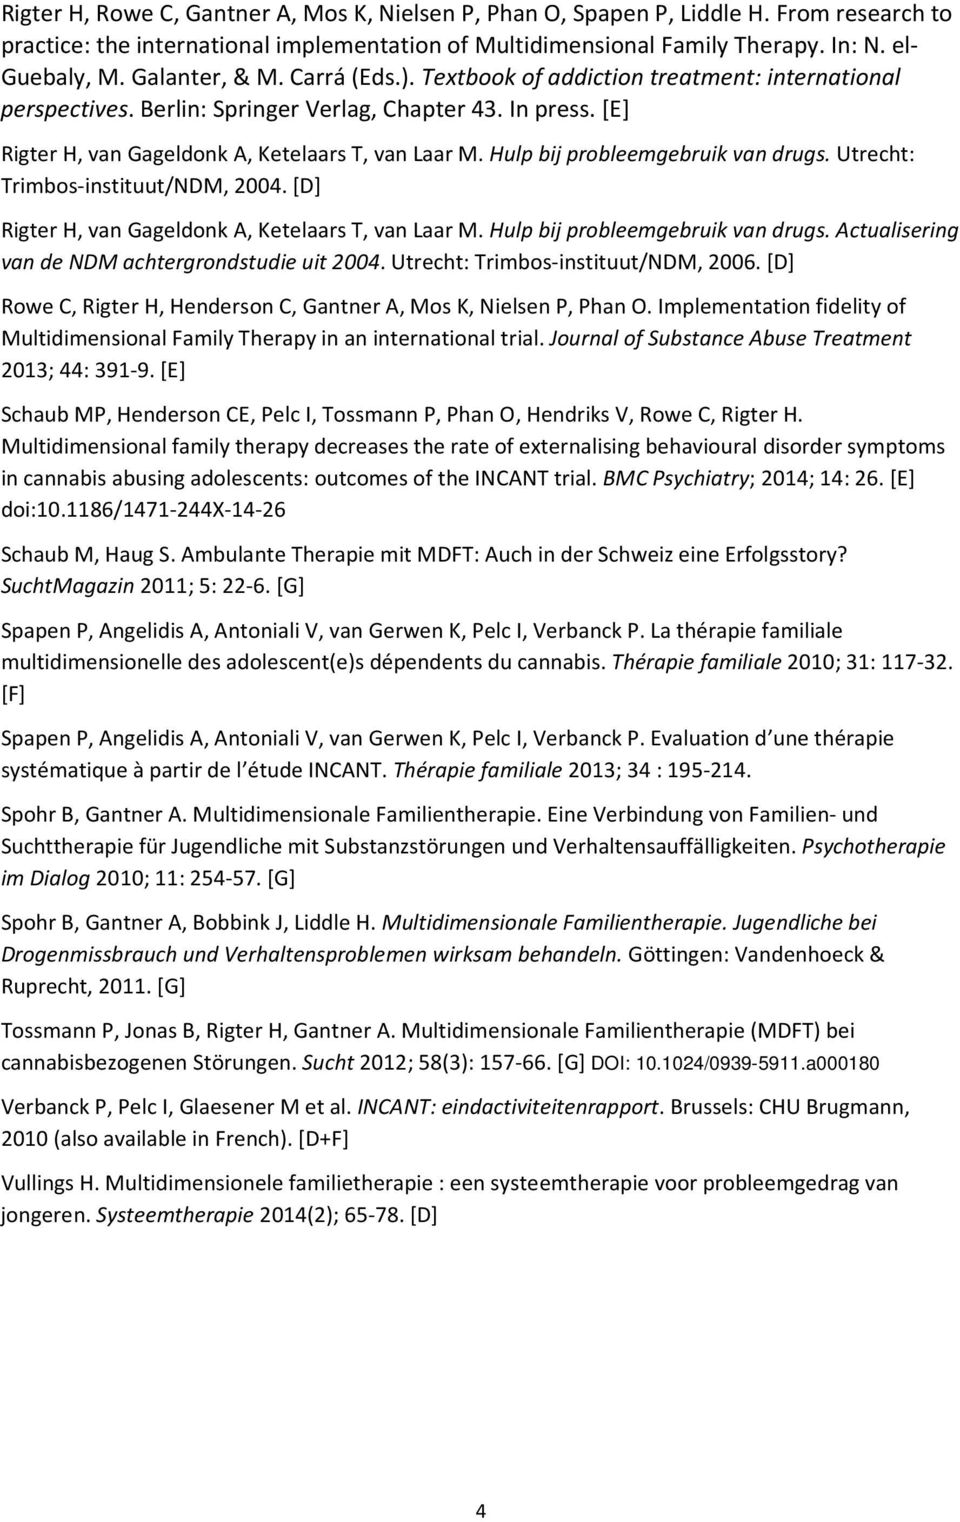 Hulp bij probleemgebruik van drugs. Utrecht: Trimbos-instituut/NDM, 2004. [D] Rigter H, van Gageldonk A, Ketelaars T, van Laar M. Hulp bij probleemgebruik van drugs.